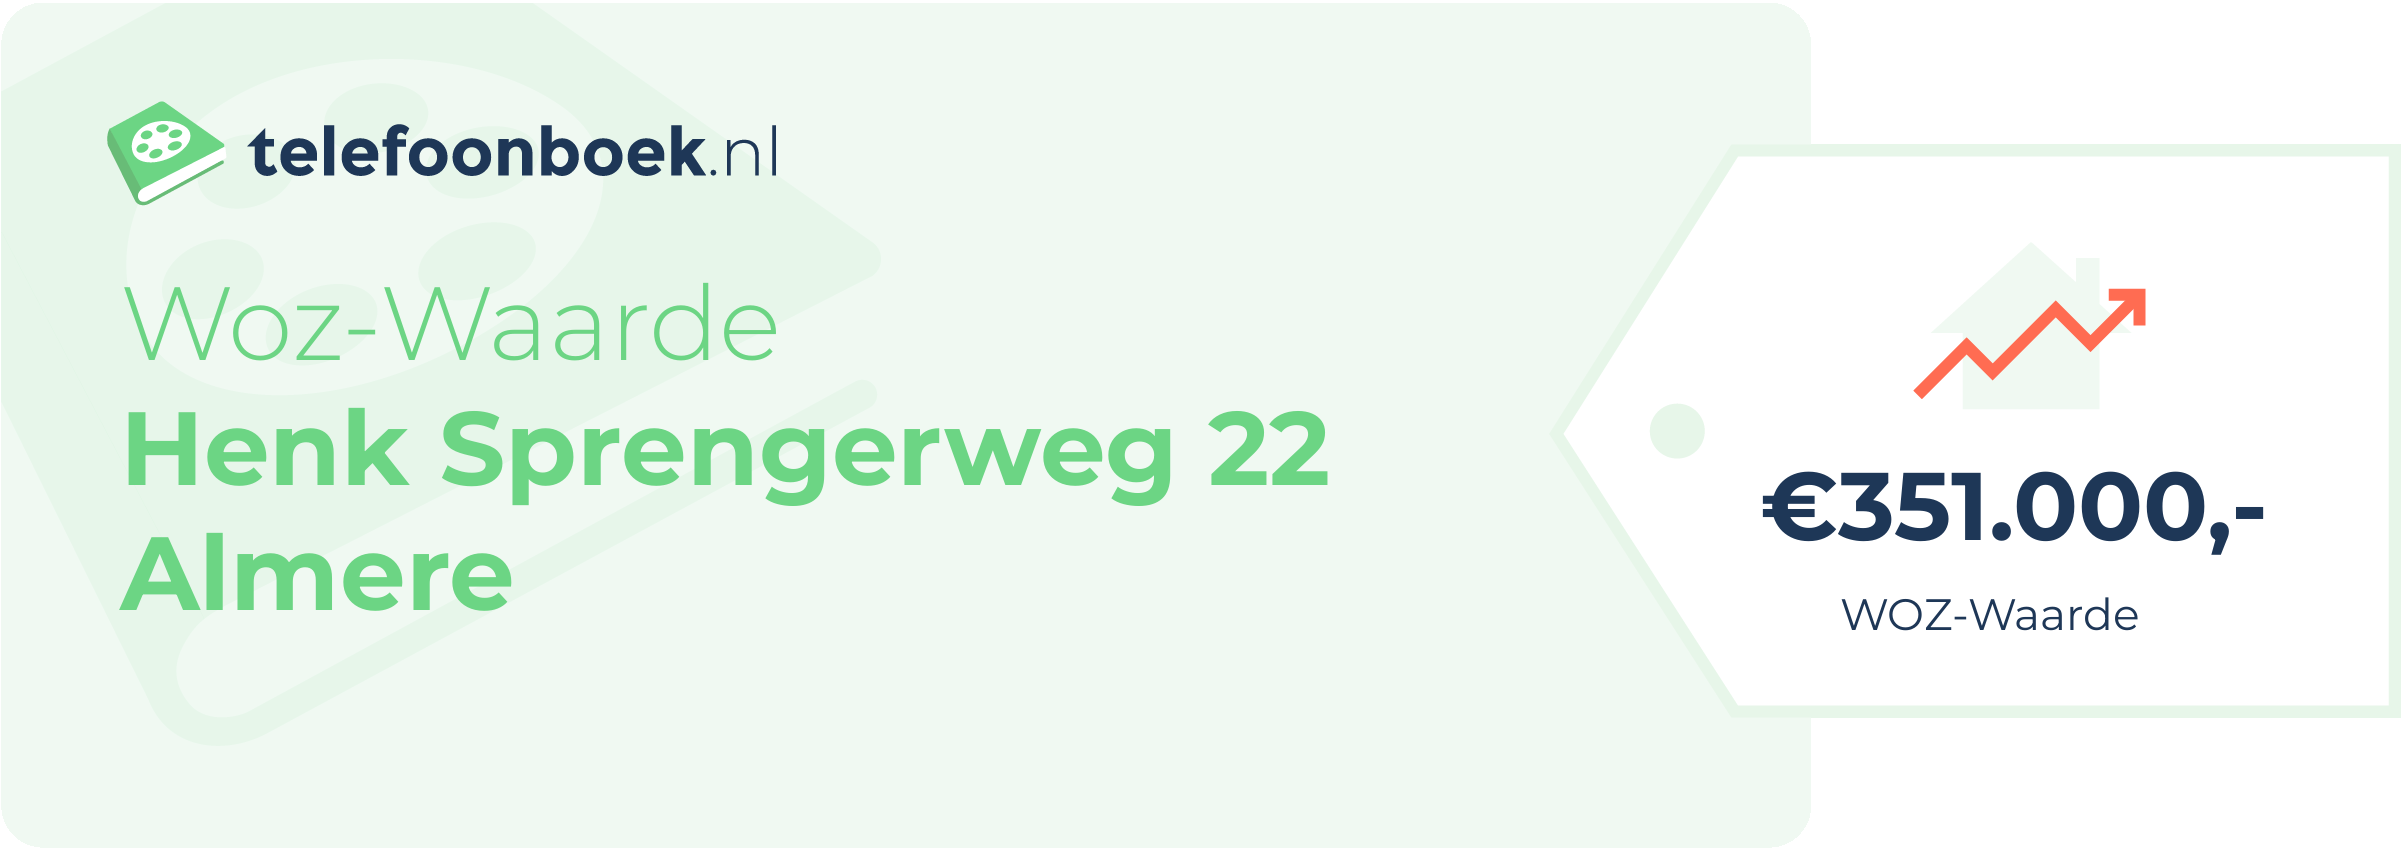 WOZ-waarde Henk Sprengerweg 22 Almere